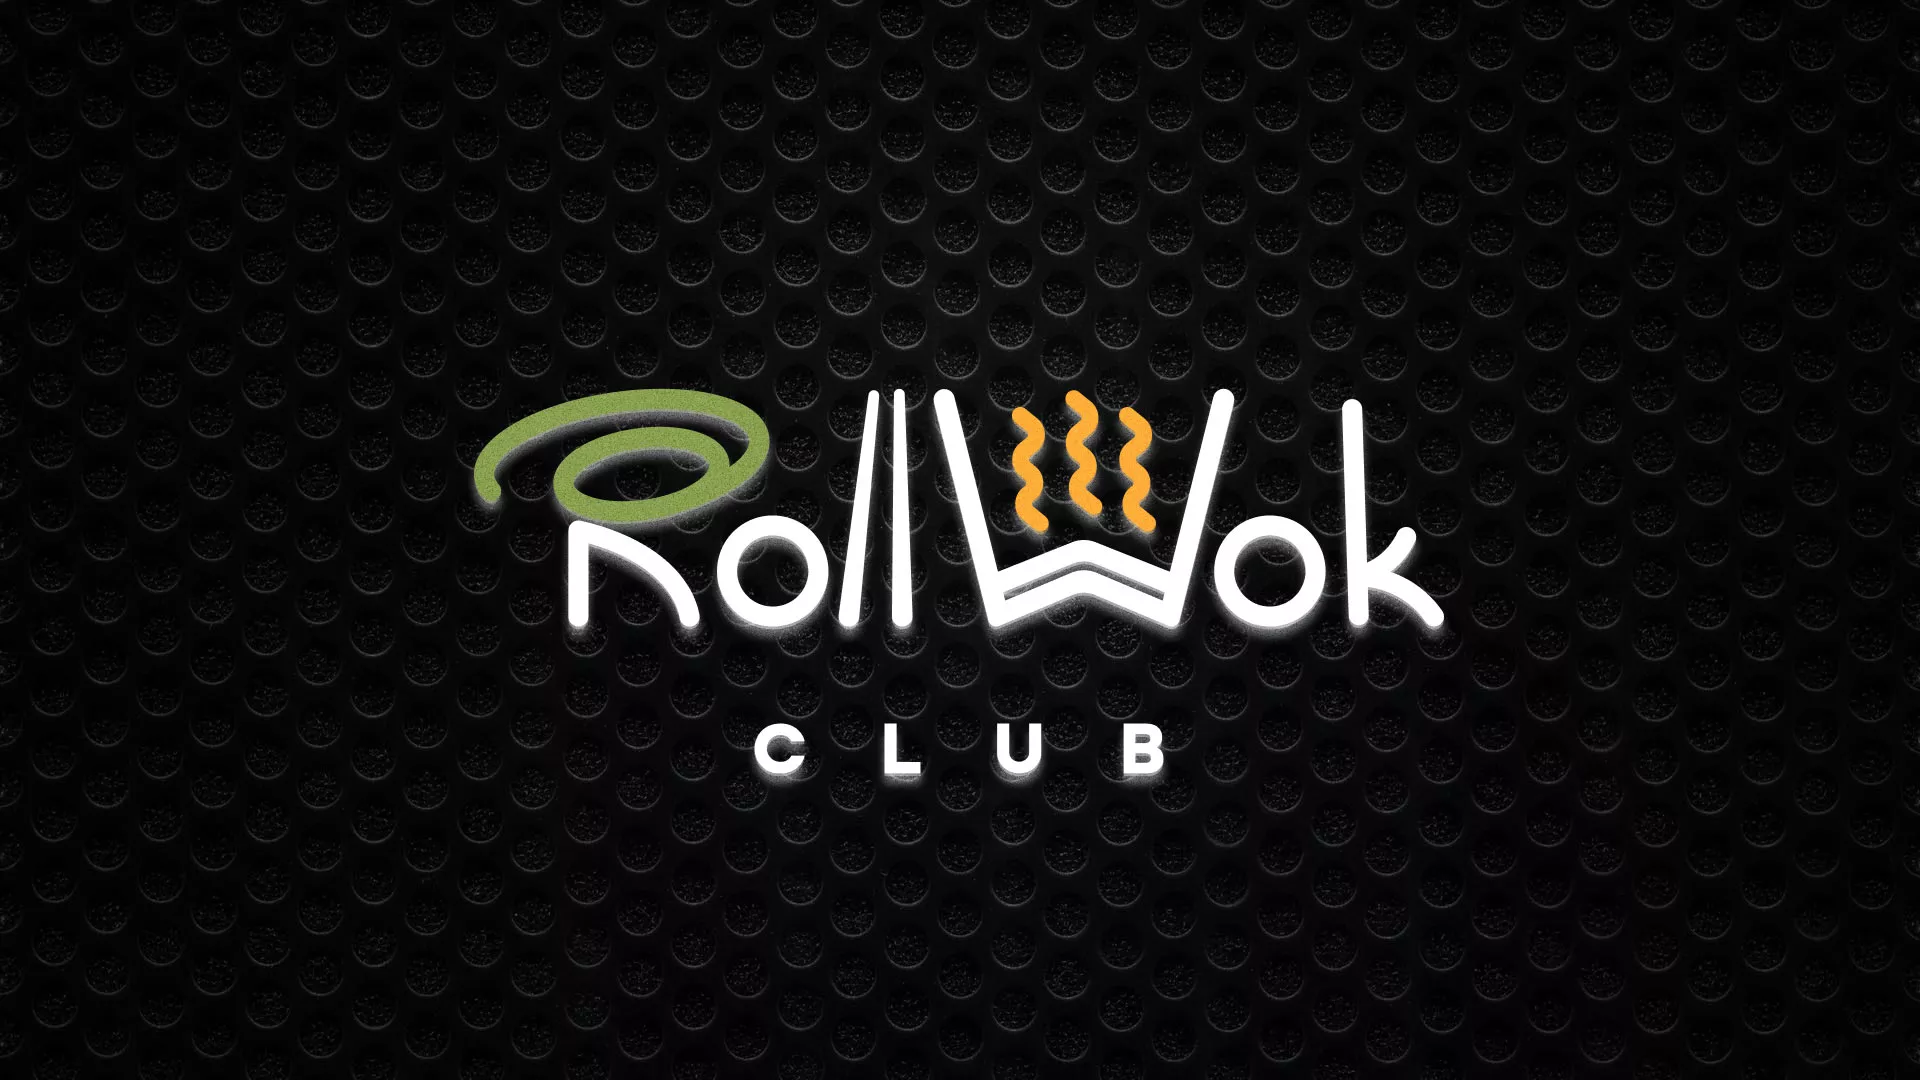 Брендирование торговых точек суши-бара «Roll Wok Club» в Белокурихе